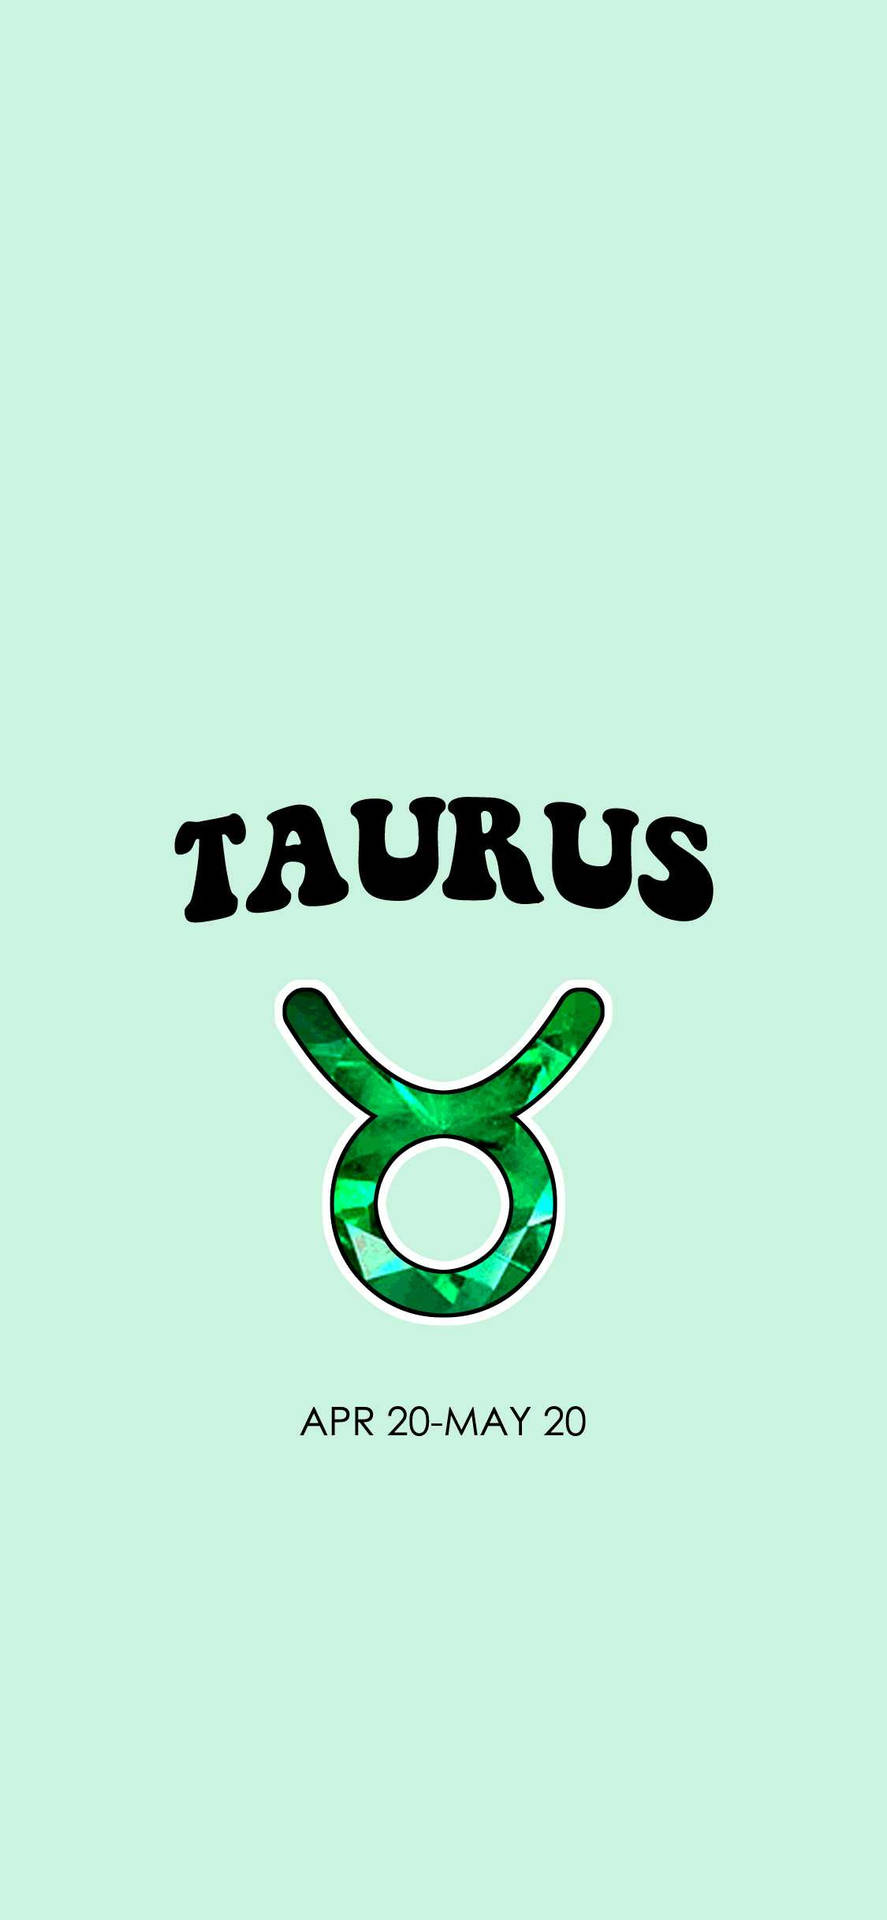 Download Cool Taurus Aesthetic Iphone Lock Screen Wallpaper ...